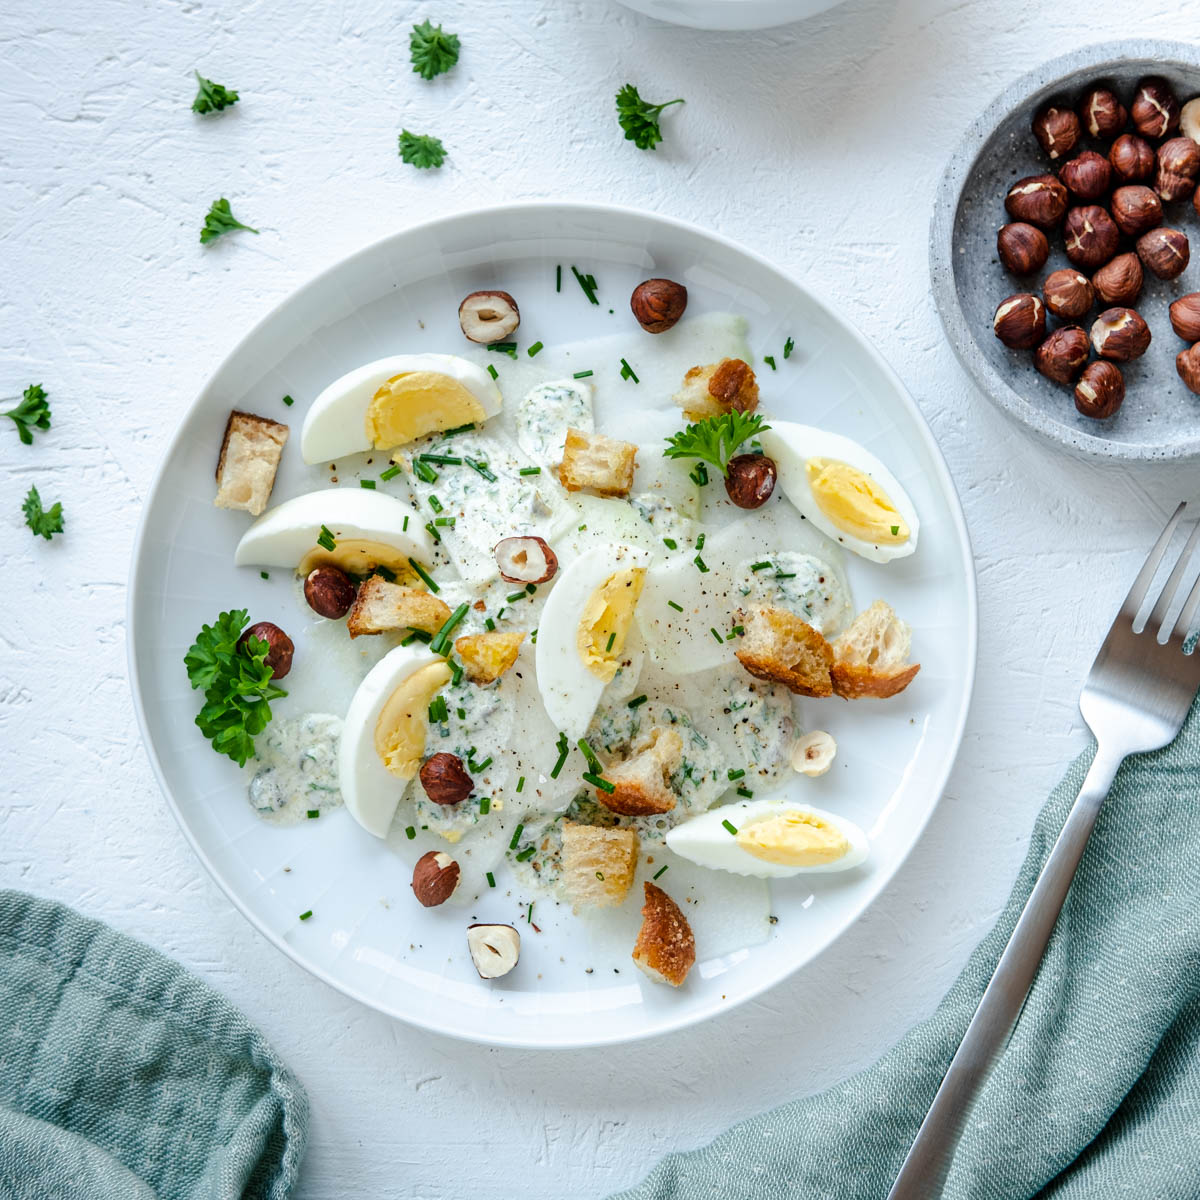 Kohlrabi-Salat mit Ei, Croutons und einem köstlichen cremigen Dressing